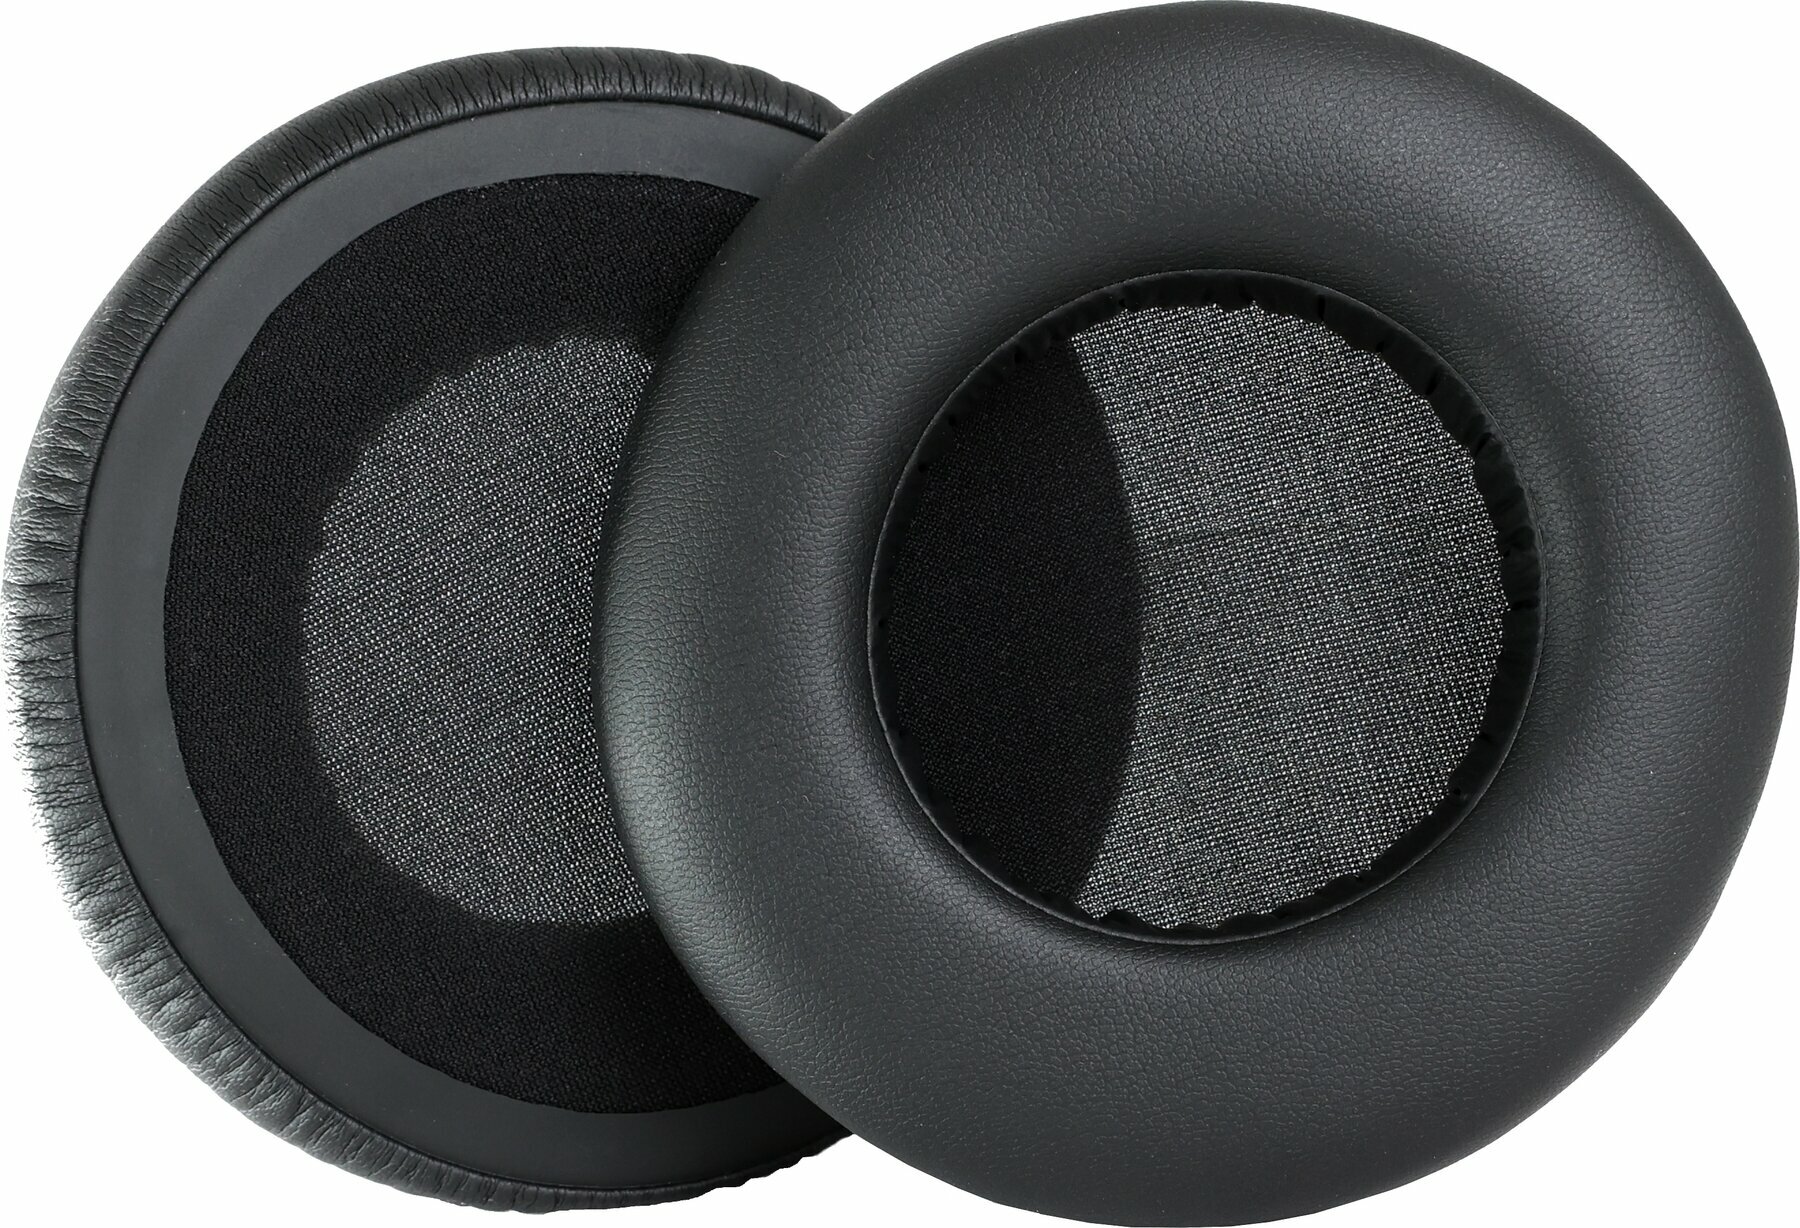 Öronkuddar för hörlurar Veles-X K240MKII Öronkuddar för hörlurar A500/900-K240 MKII-K240S-K242-K550-K551 Svart